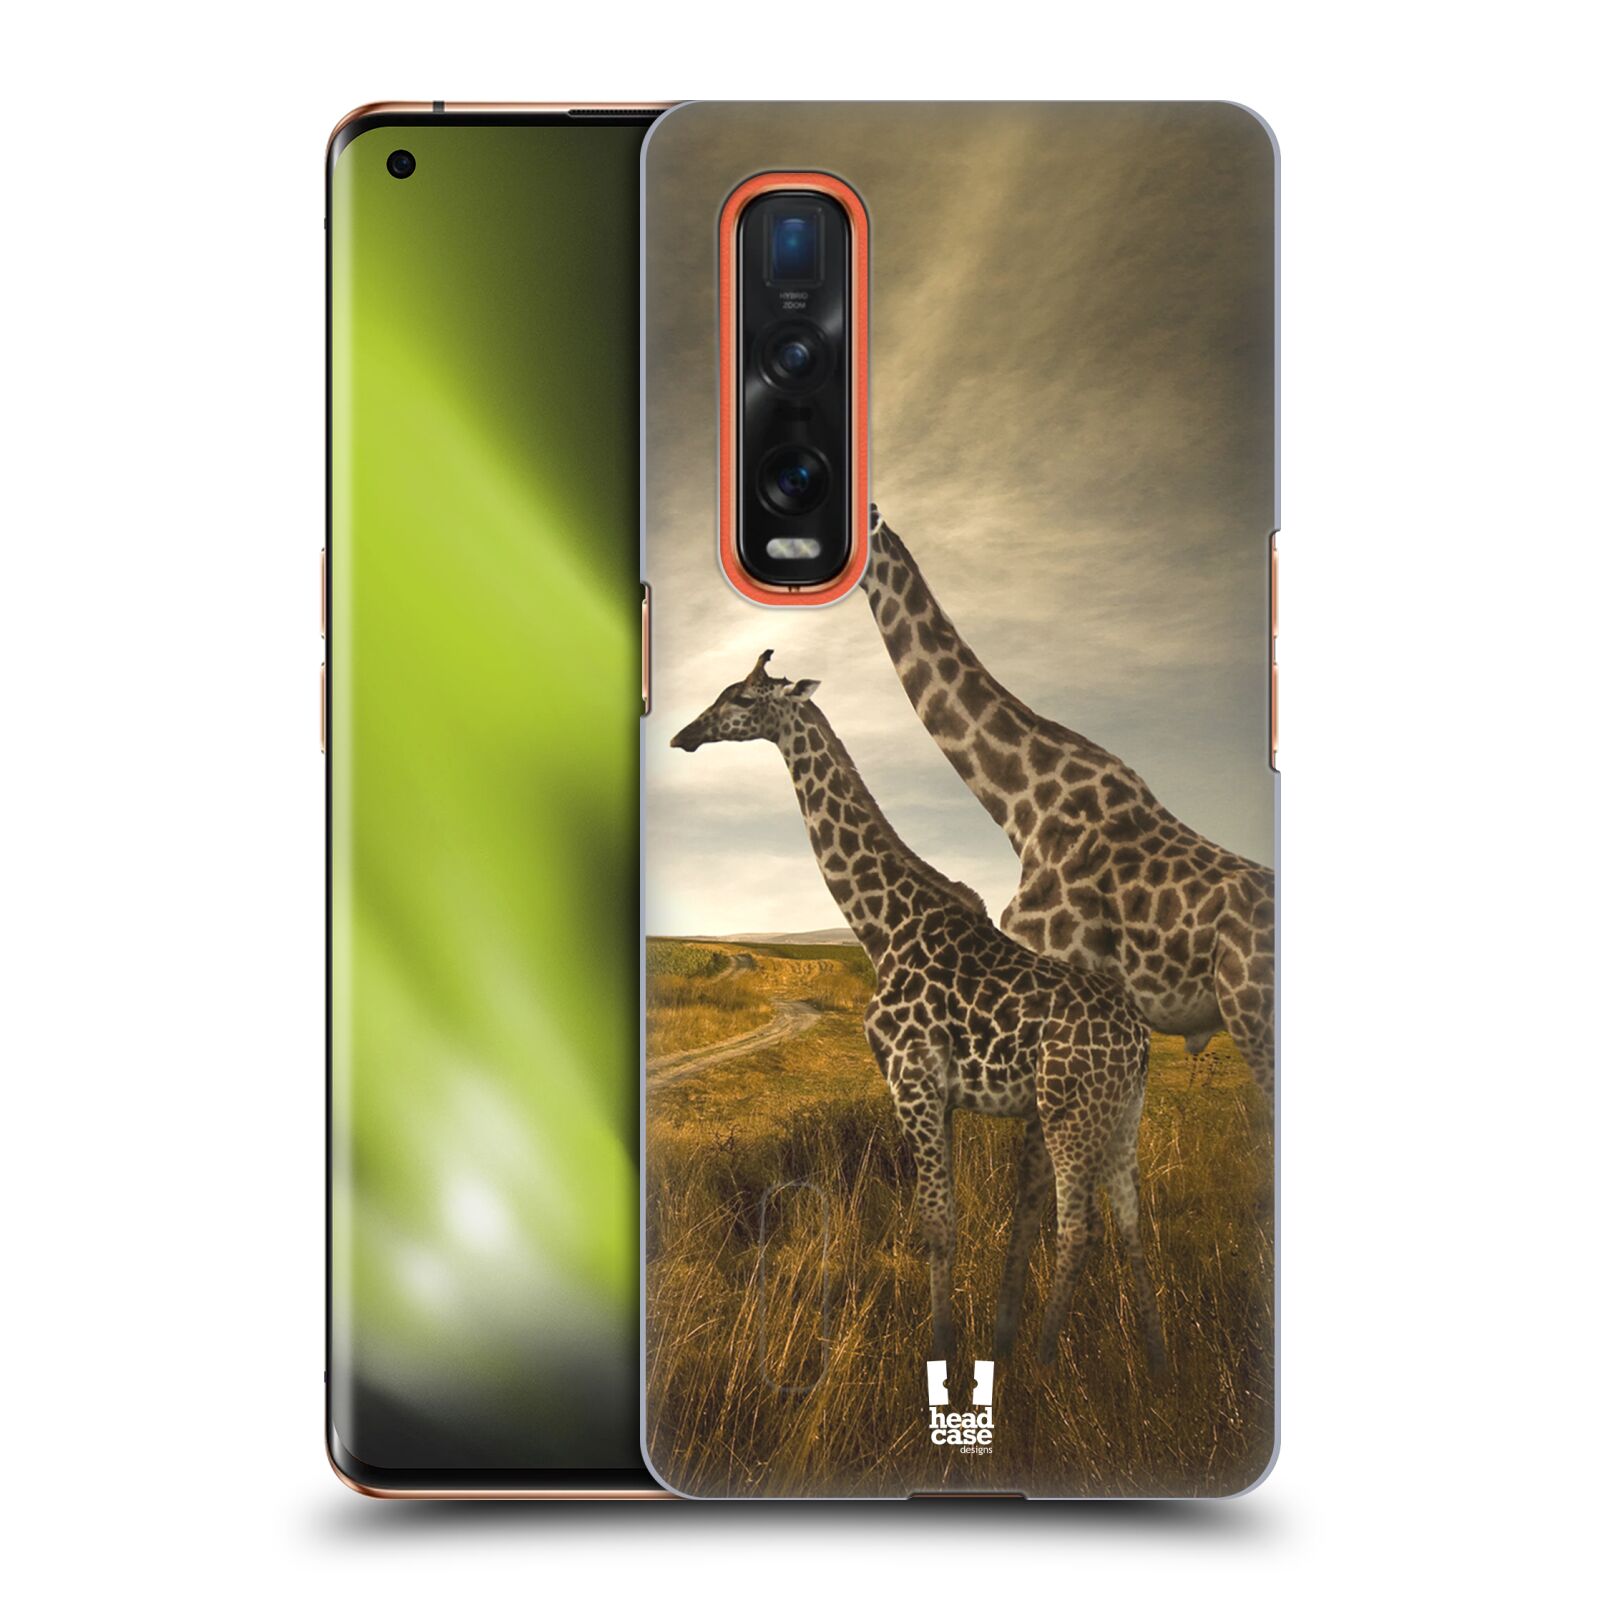 Zadní obal pro mobil Oppo Find X2 PRO - HEAD CASE - Svět zvířat žirafy